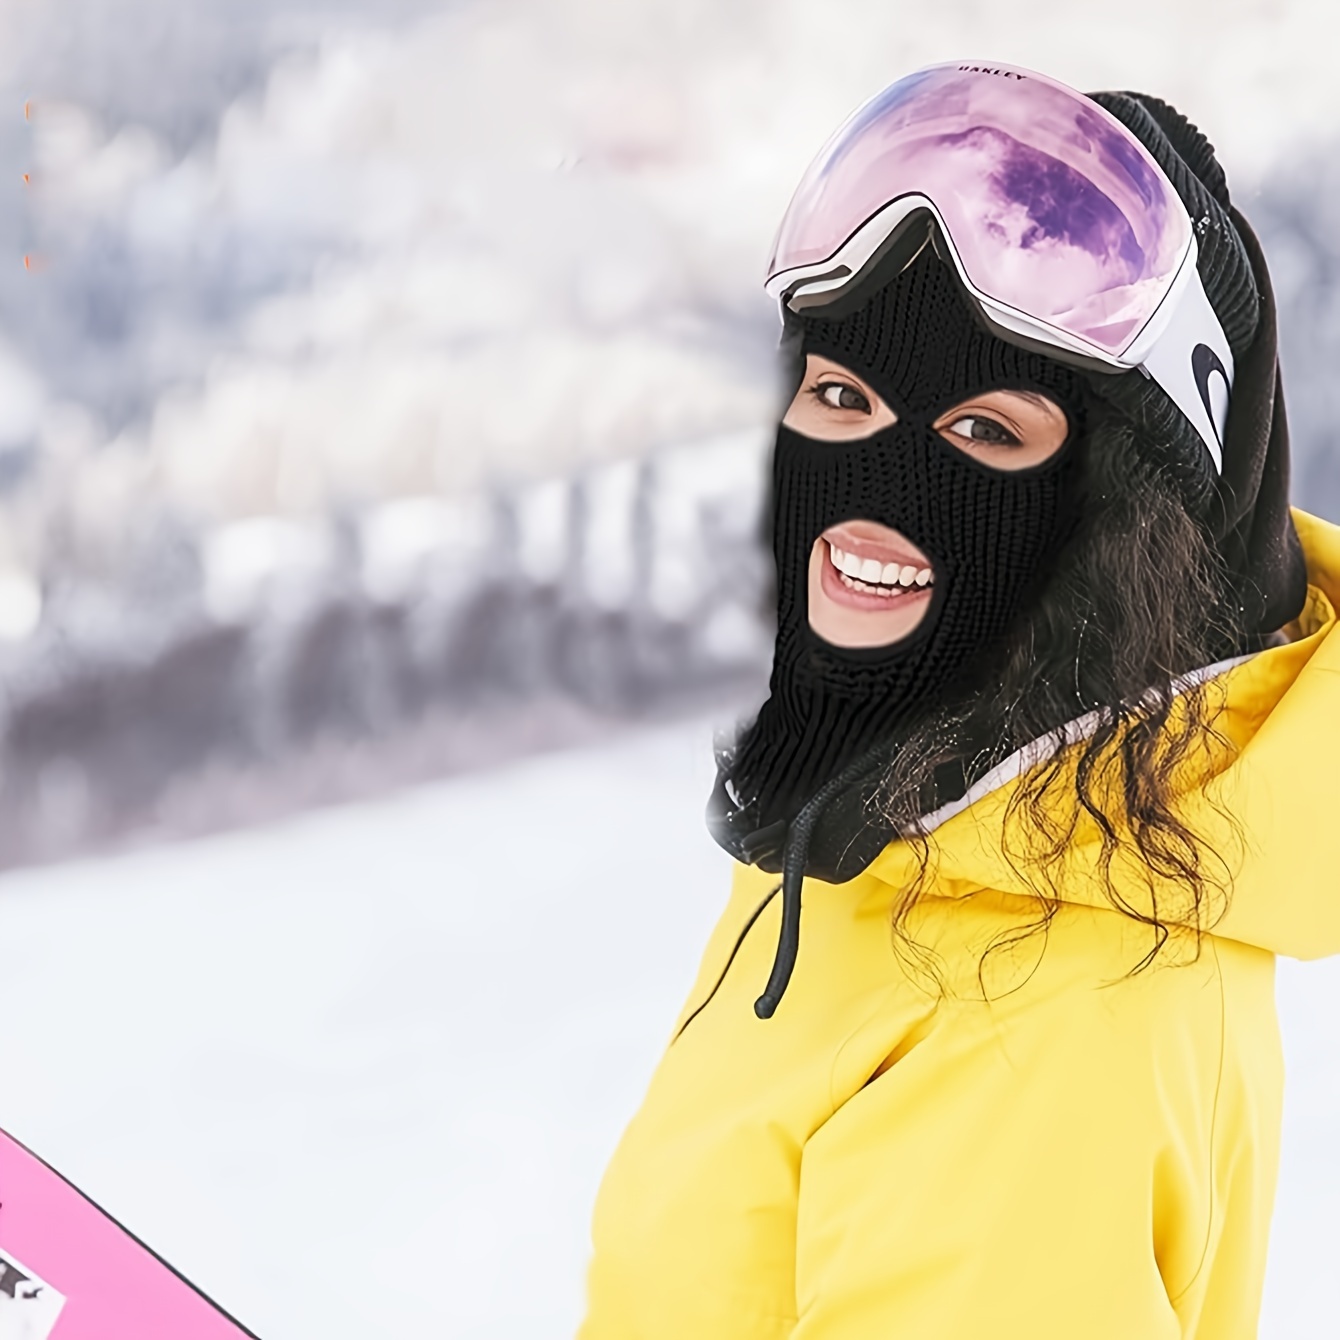 Black Balaclava - Full Face Cover Three Hole Ski Mask – ™